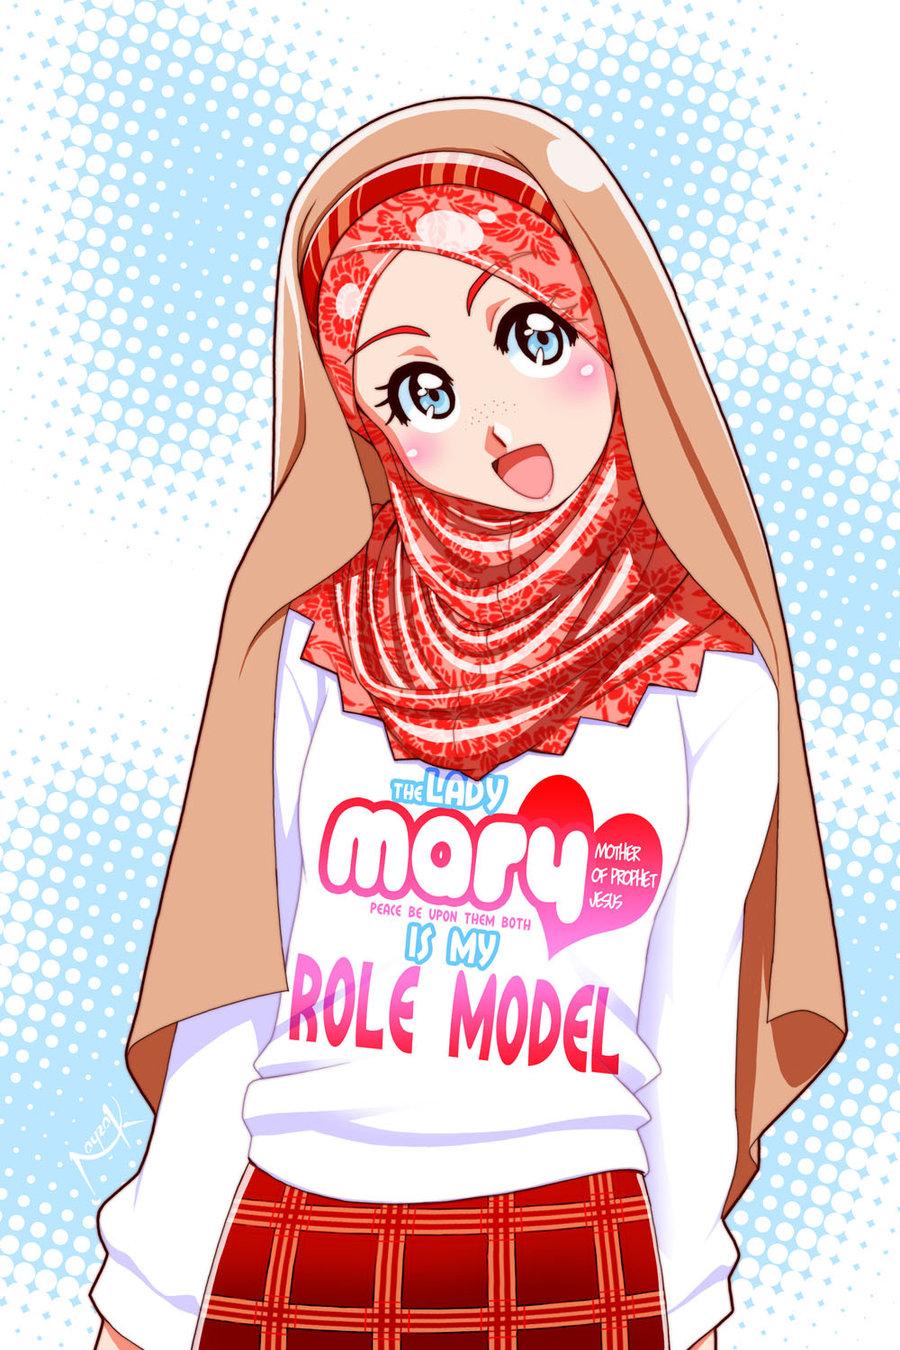 Foto Profil Wa Anime Hijab / Profil wa muslim 1000 gambar karikatur